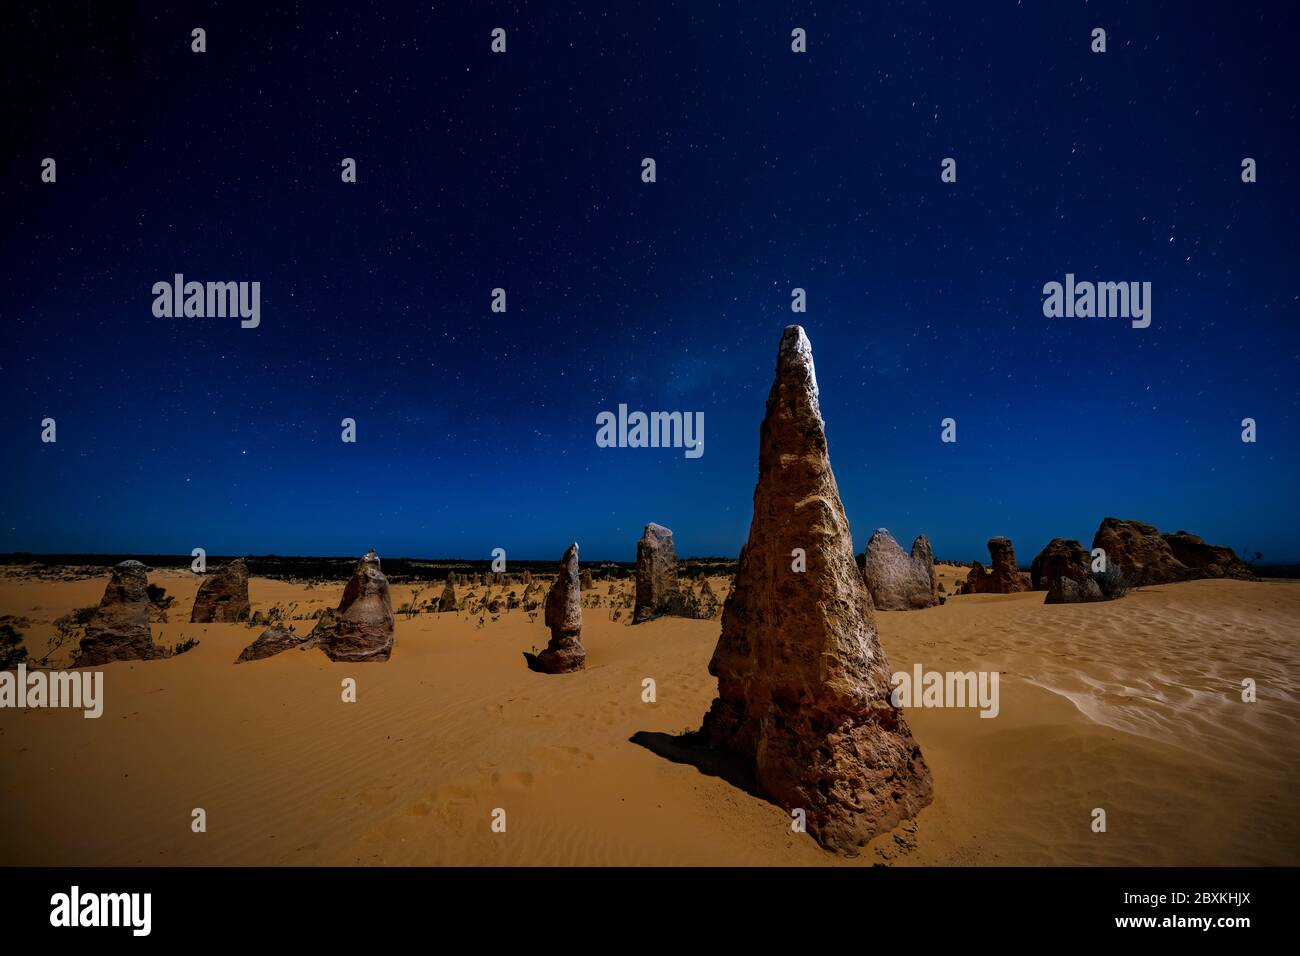 Una pila di pietra calcarea nel deserto dei Pinnacoli nel parco nazionale di Nambung, Australia occidentale, che è stata dipinta di luce di notte Foto Stock